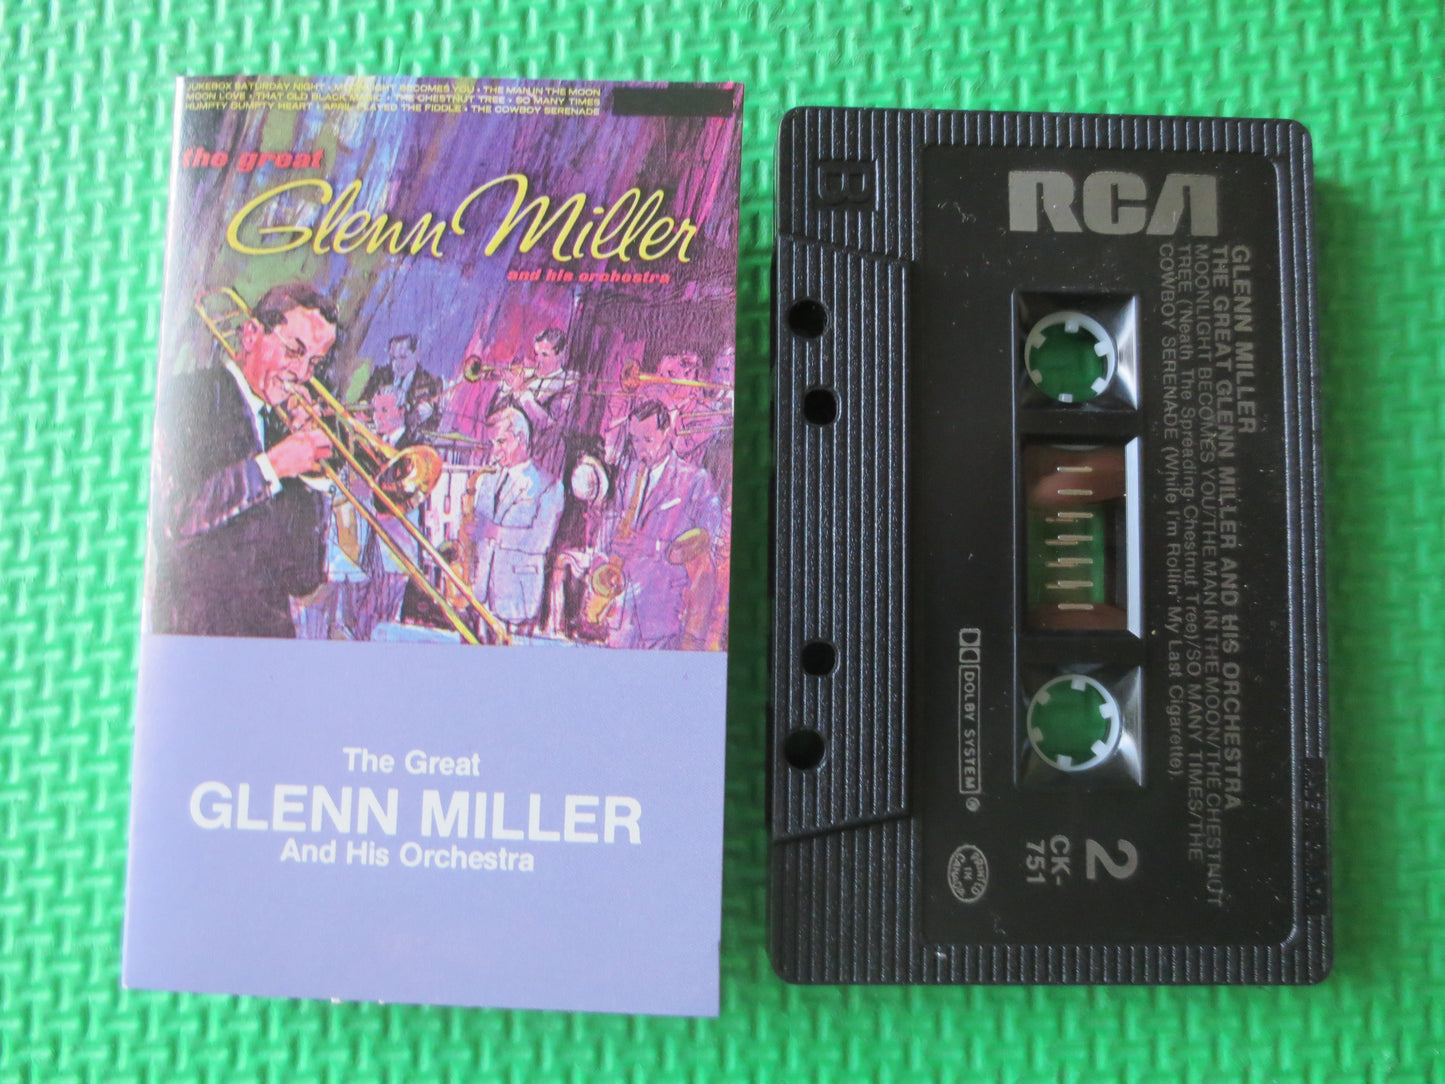 GLENN MILLER, GREATEST Hits, Glenn Miller Tape, Glenn Miller Cassette, Jazz Cassette, Jazz Tapes, Cassette, 1985 Cassette